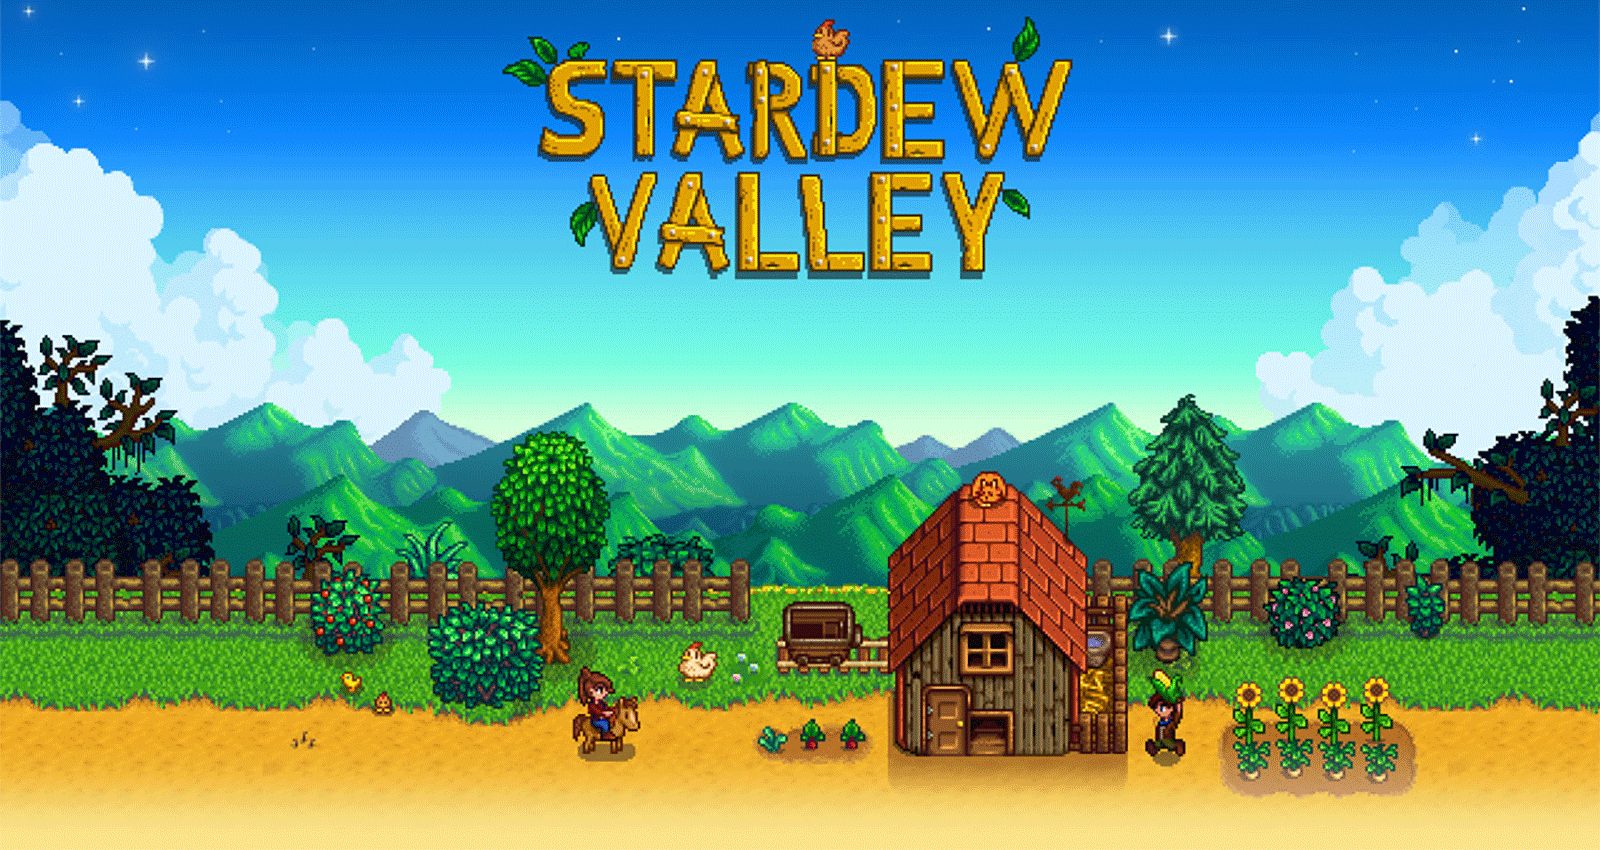 Stardew Valley Mod Apk 1.4.5.151 (Unlimited Money) Download 2021